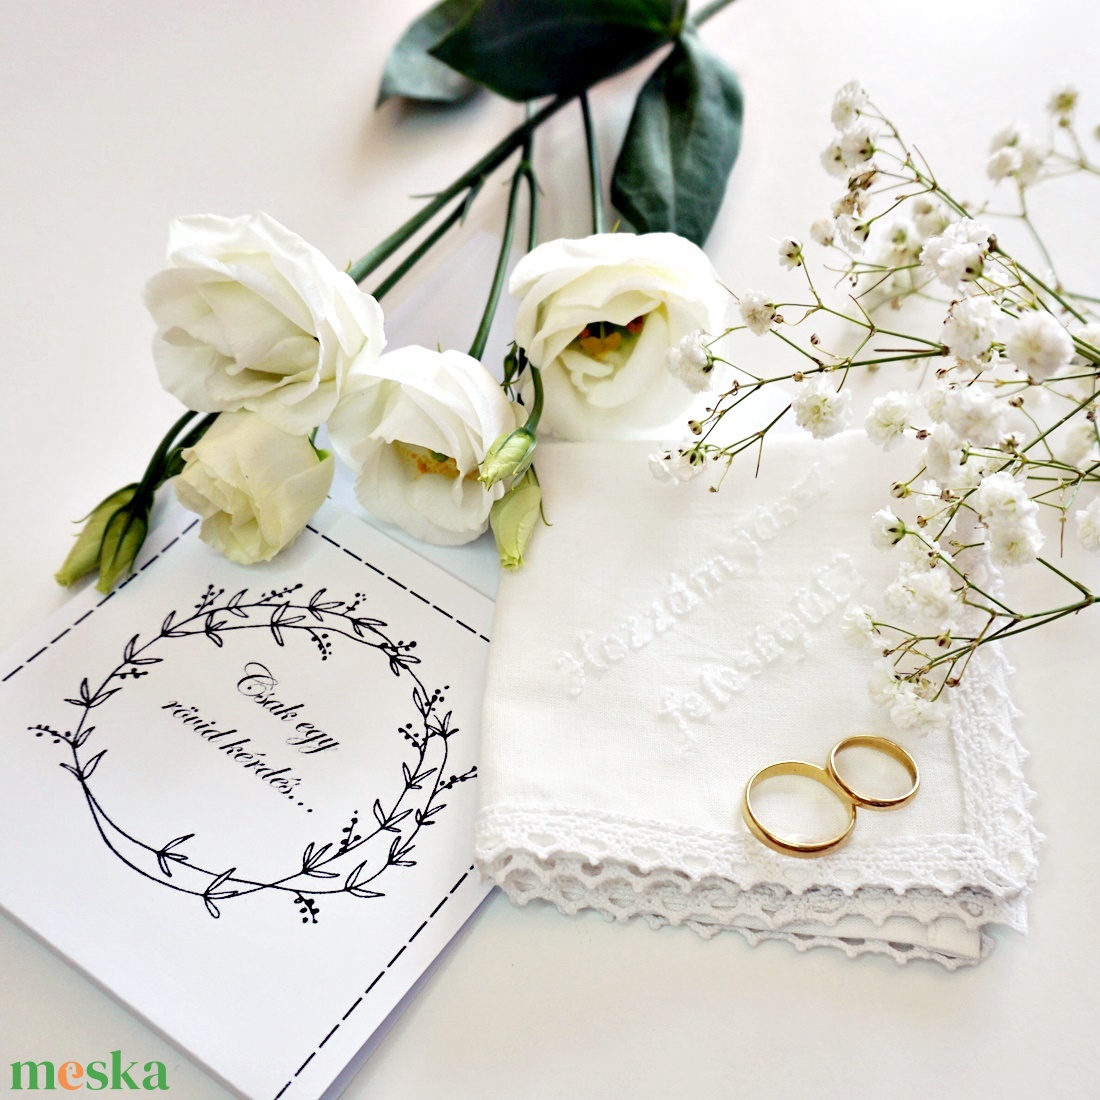 Hozzám jössz feleségül? Lánykérő ajándék - hímzett csipkés zsebkendő - esküvő - kiegészítők - gyűrűtartó & gyűrűpárna - Meska.hu